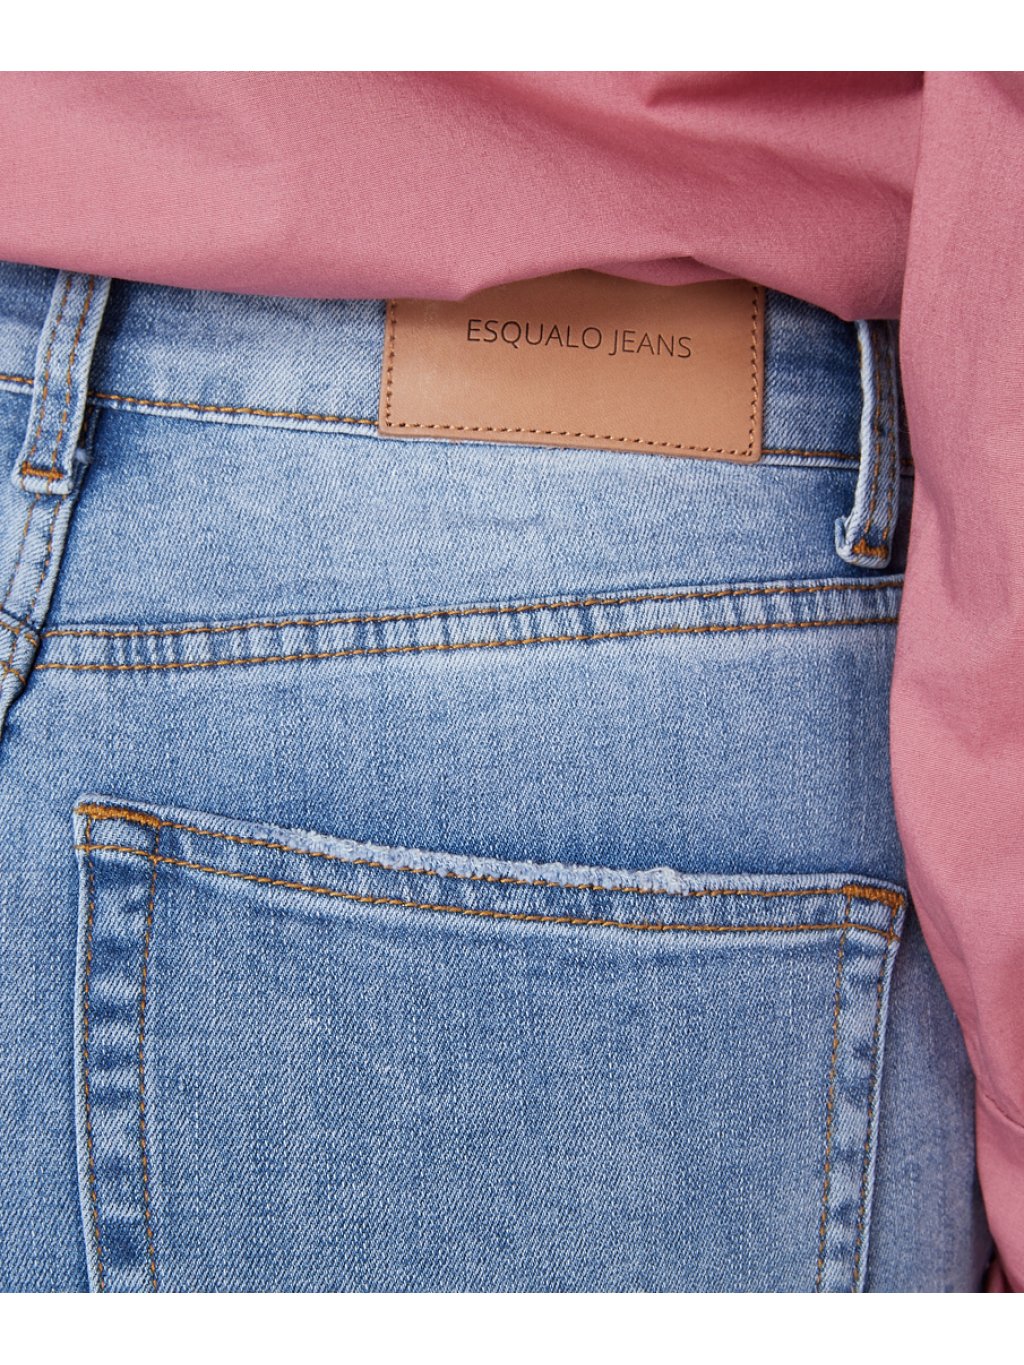 Kalhoty Esqualo 12503 světle modré džíny slim fit